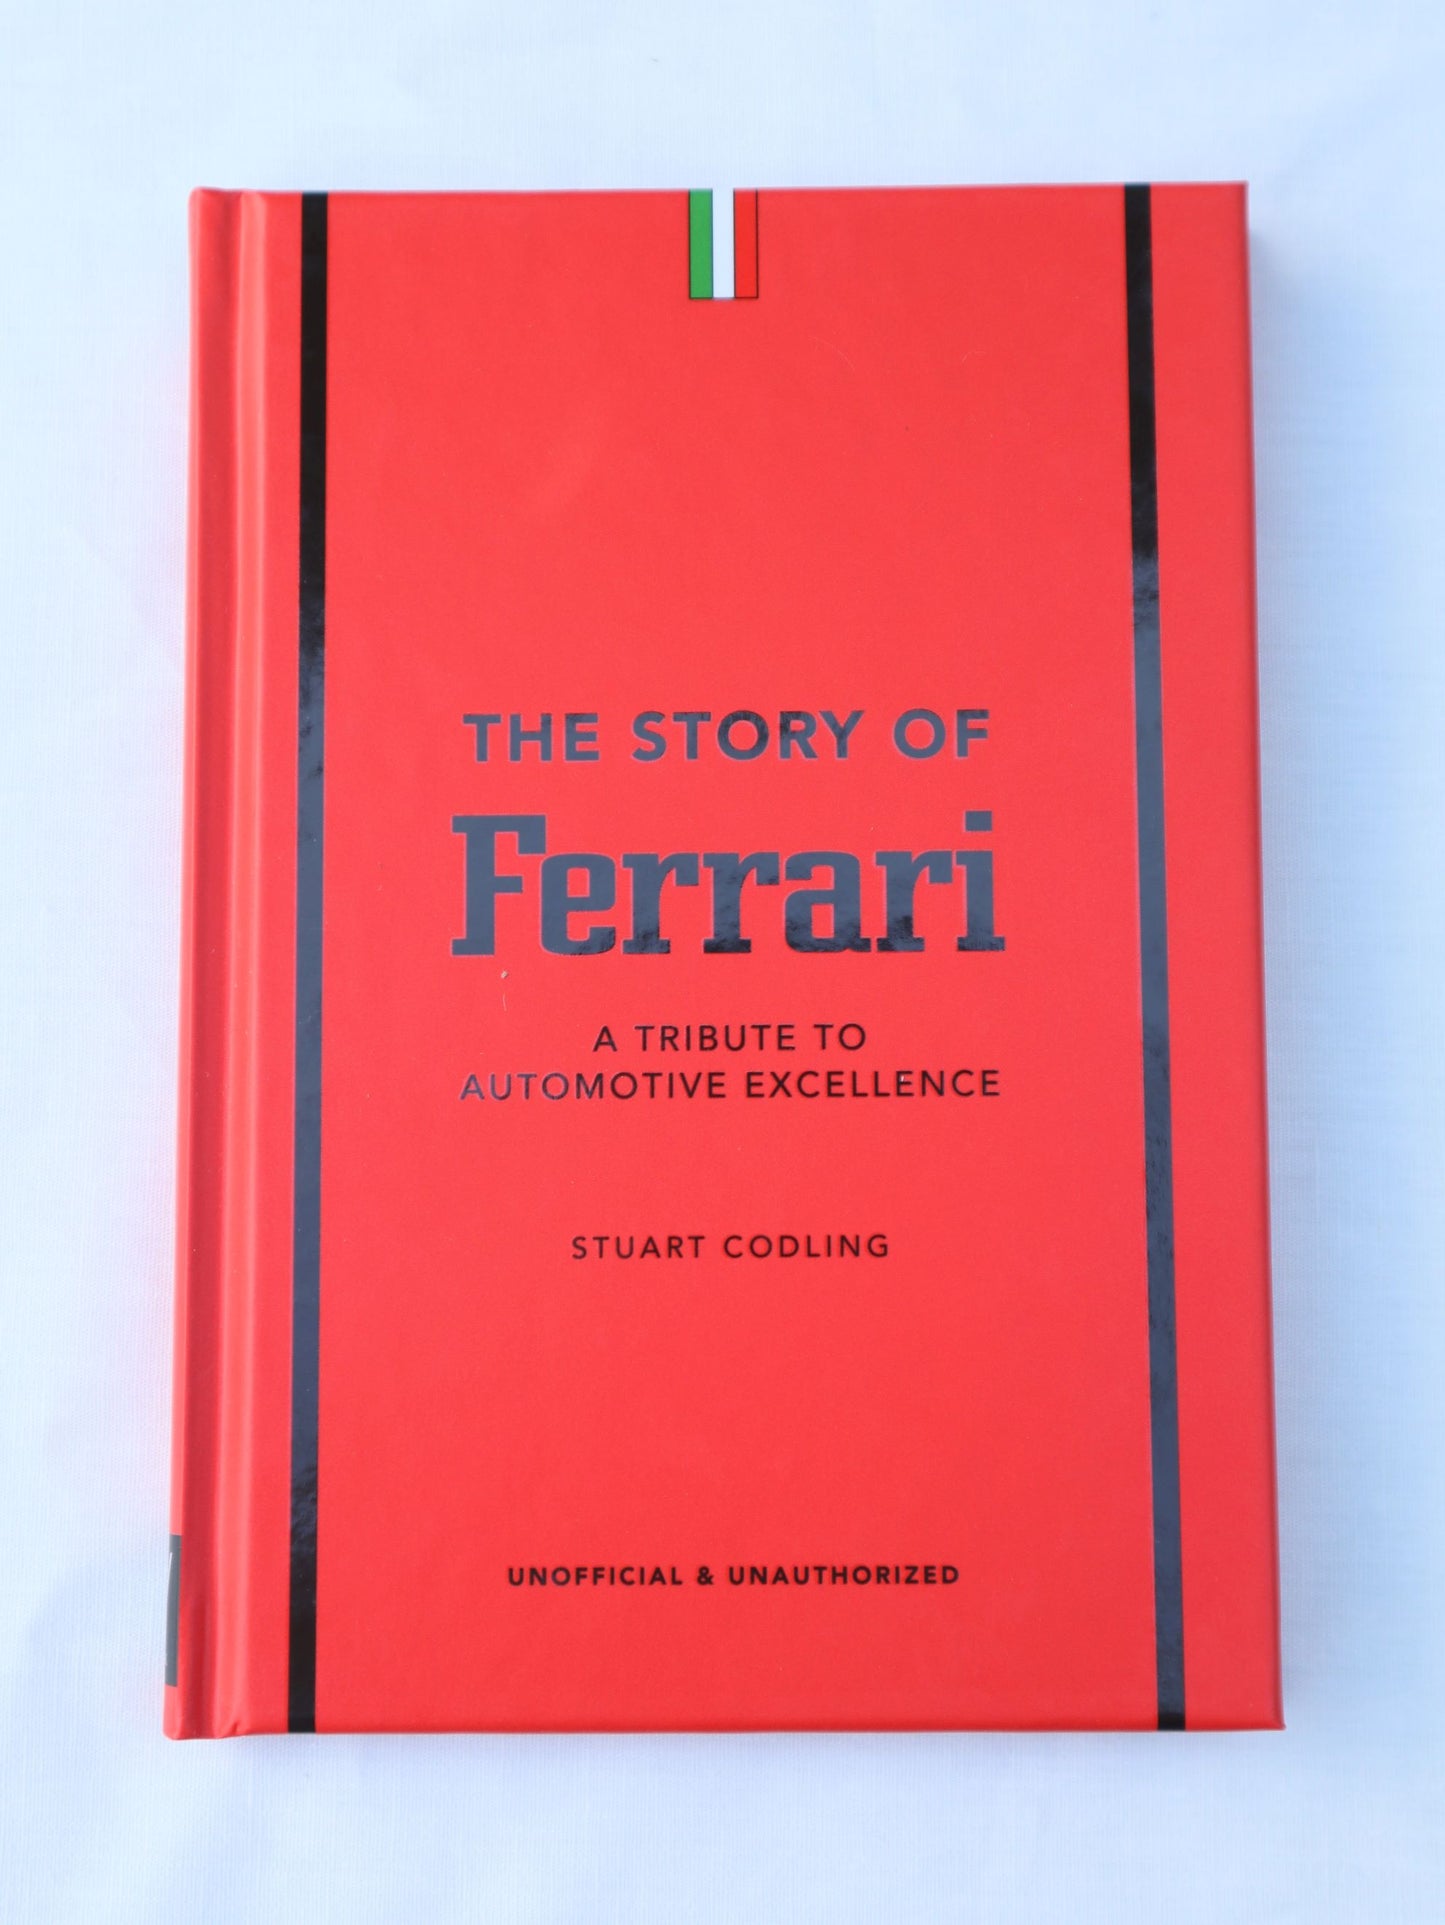 「Ferrari」